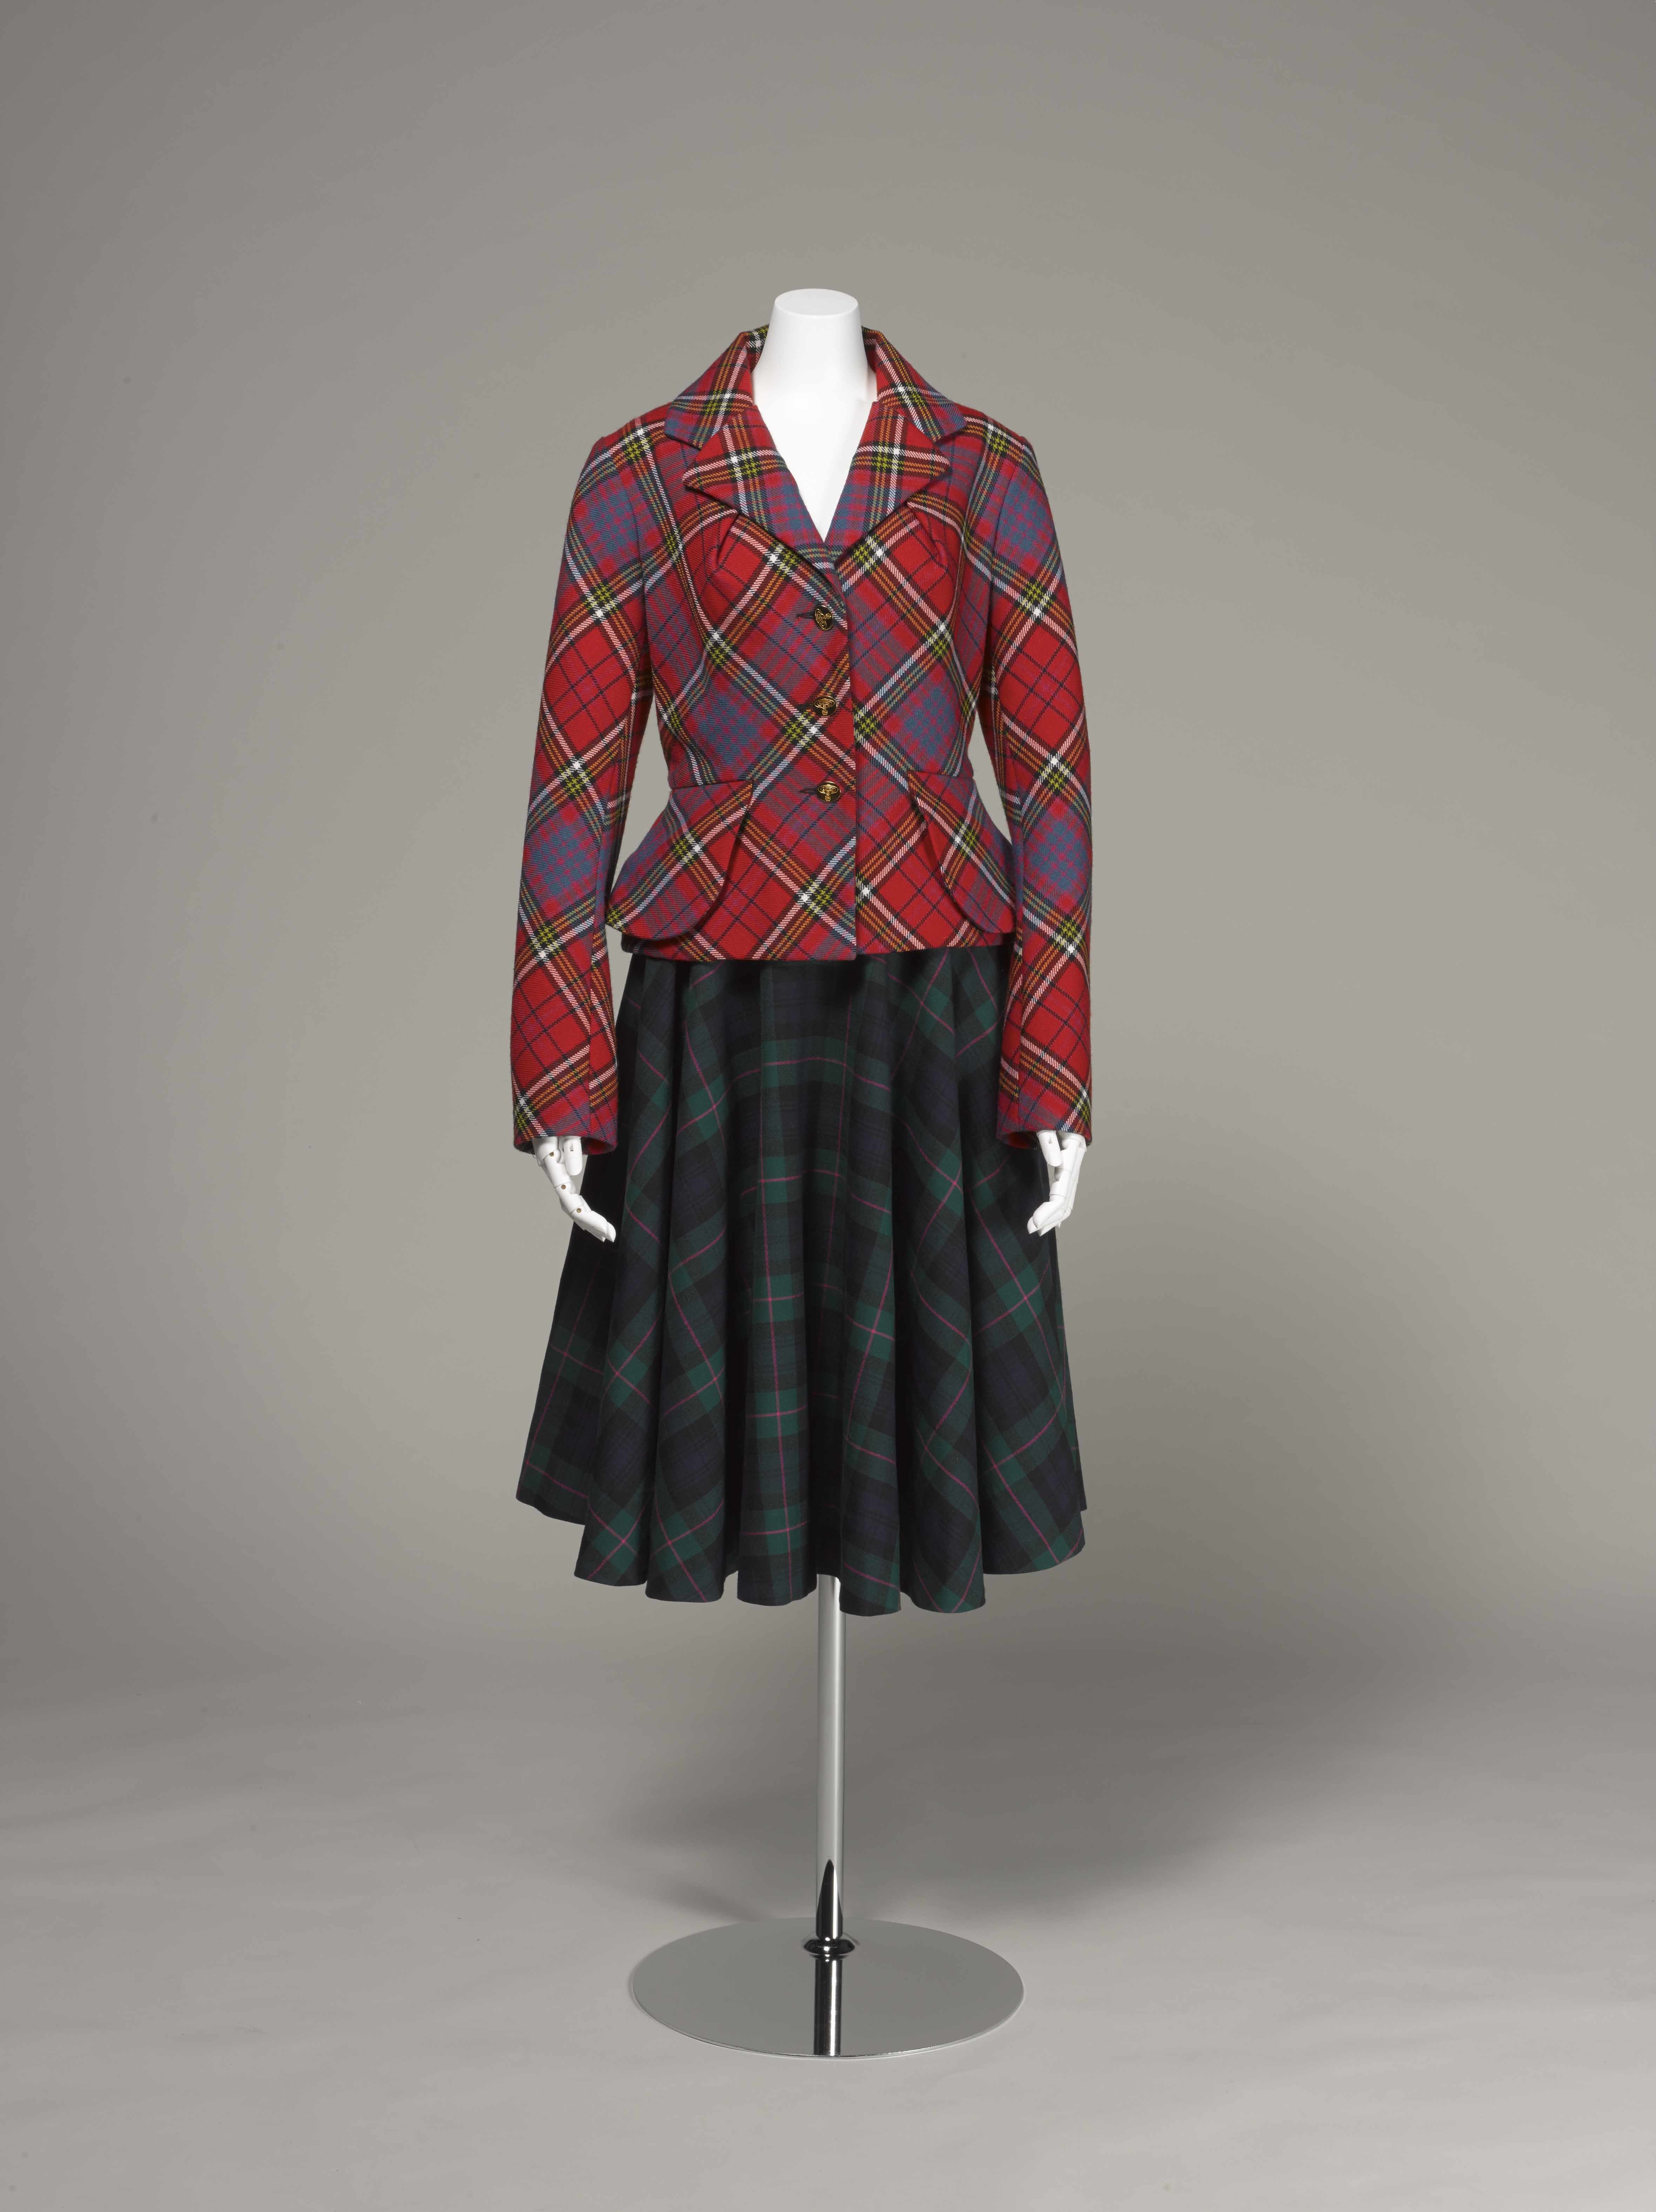 ヴィヴィアン・ウエストウッド <タータン・スーツ> 1993年 神戸ファッション美術館蔵